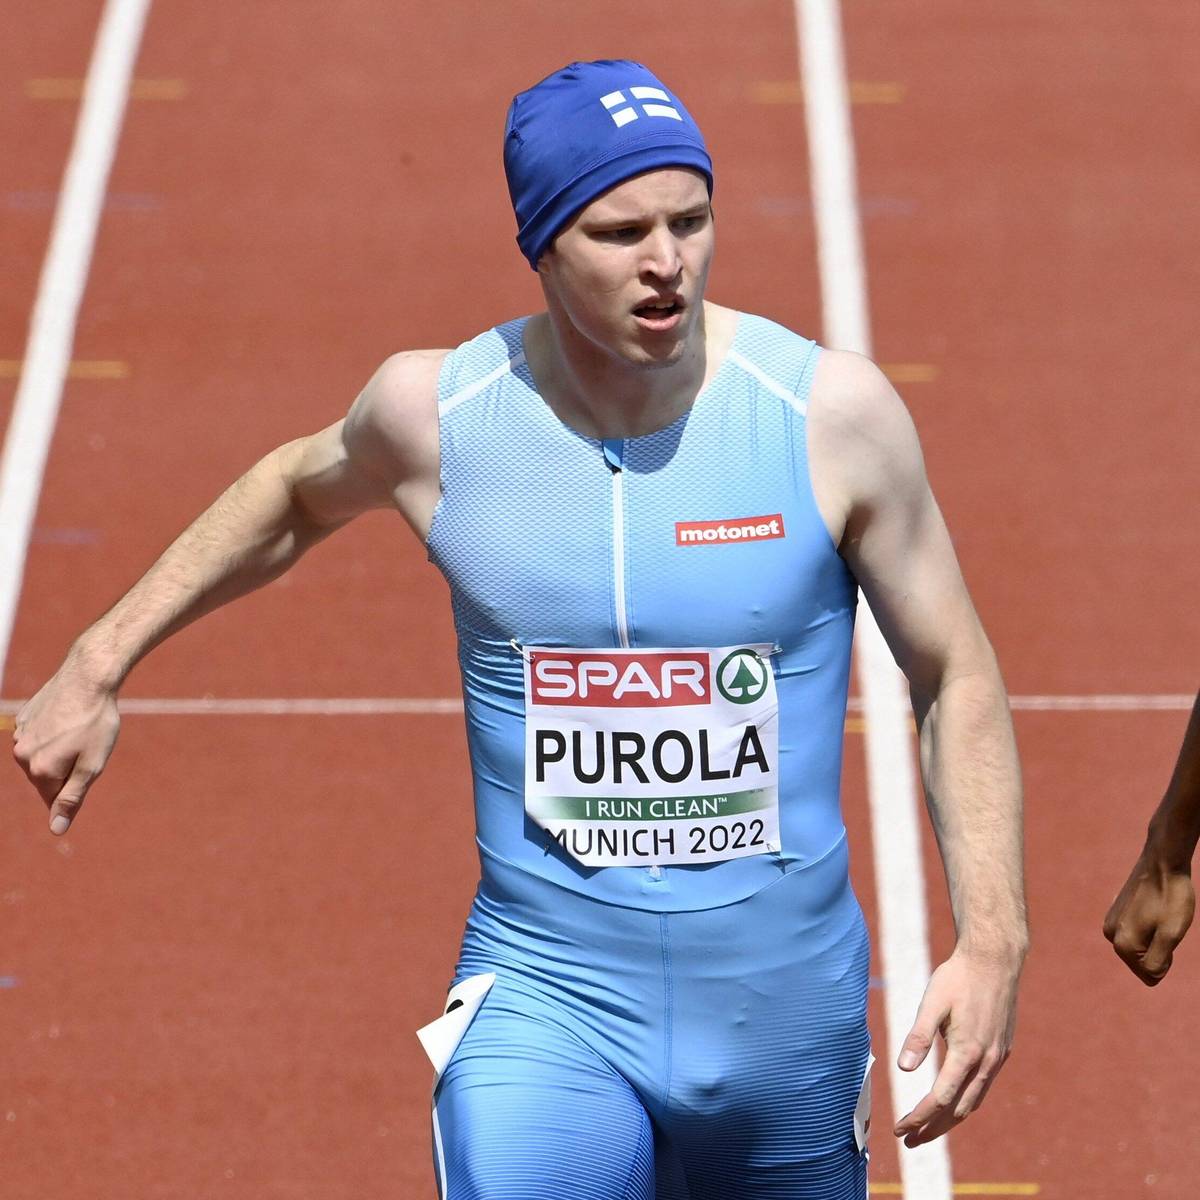 Der finnische Sprinter Samuel Purola sorgt bei der EM in München nicht nur sportlich für Aufsehen. Im Fokus steht auch ein Utensil, das er sich in der Corona-Zeit zugelegt hat.